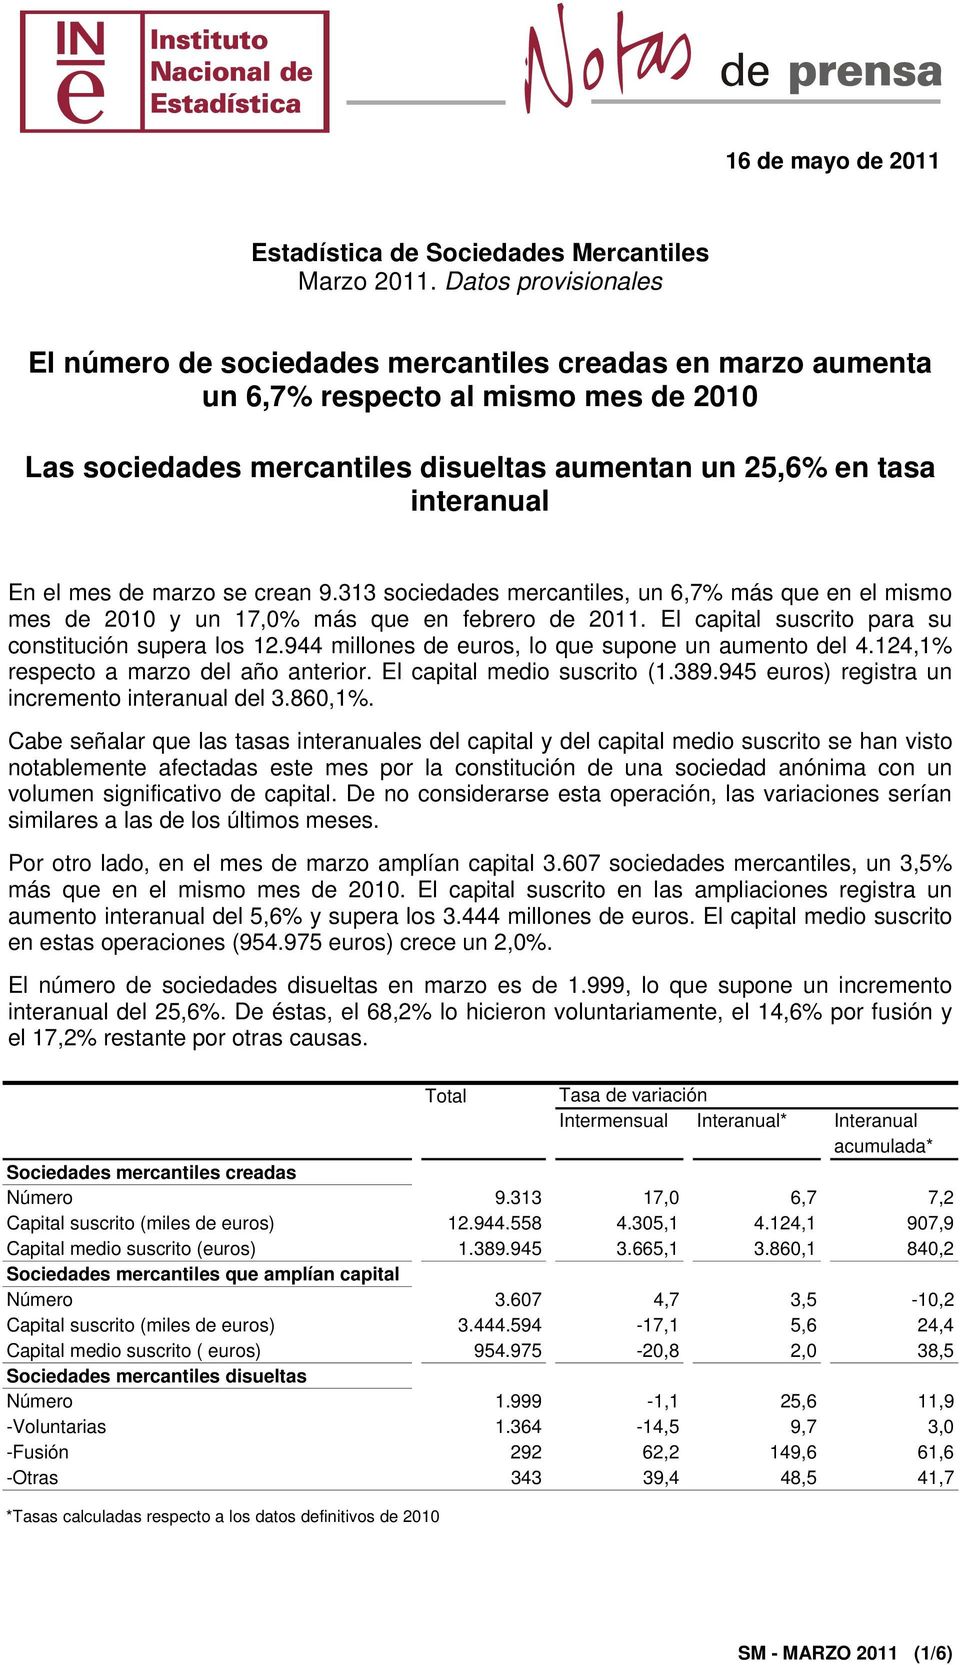 El capital suscrito para su constitución supera los 12.944 millones de euros, lo que supone un aumento del 4.124,1% respecto a marzo del año anterior. El capital medio suscrito (1.389.